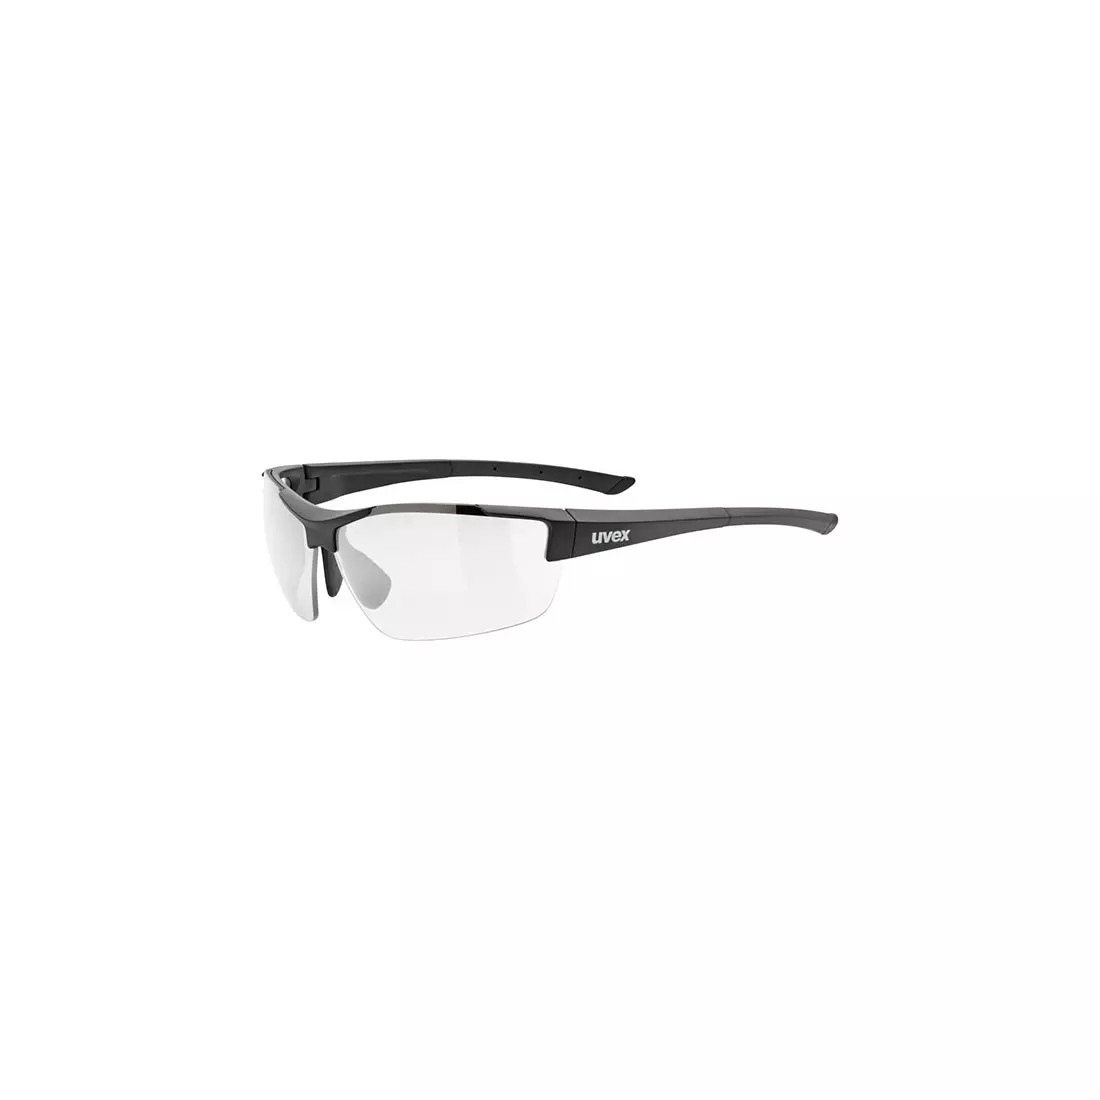 Uvex photochromic sports glasses Sportstyle 612 VL black